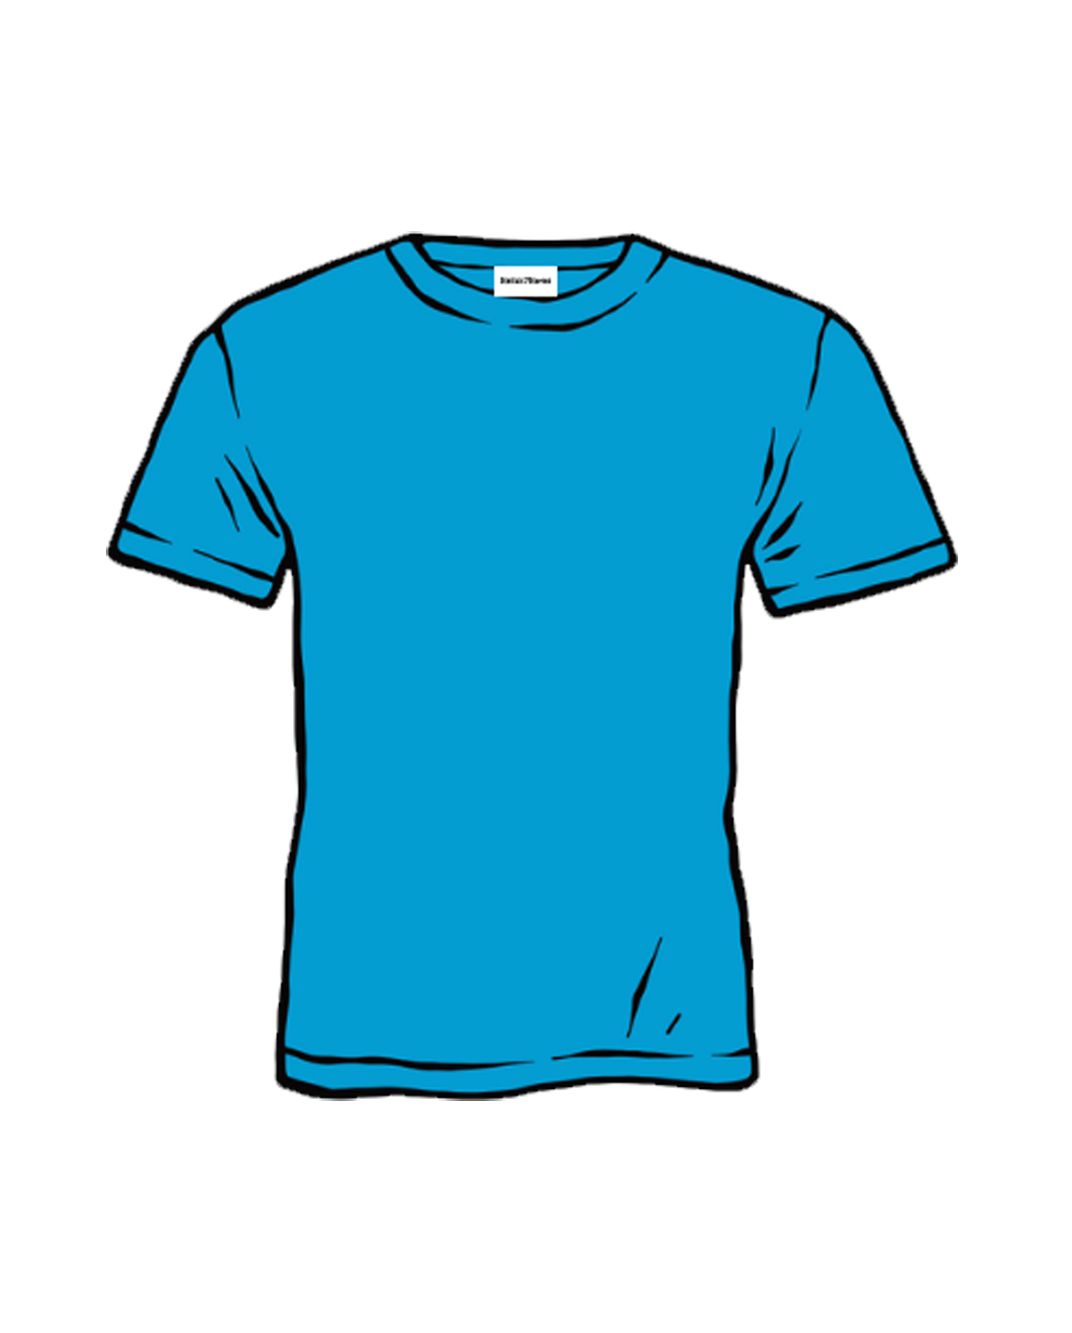 Ocean Blue Bamboo T-Shirt